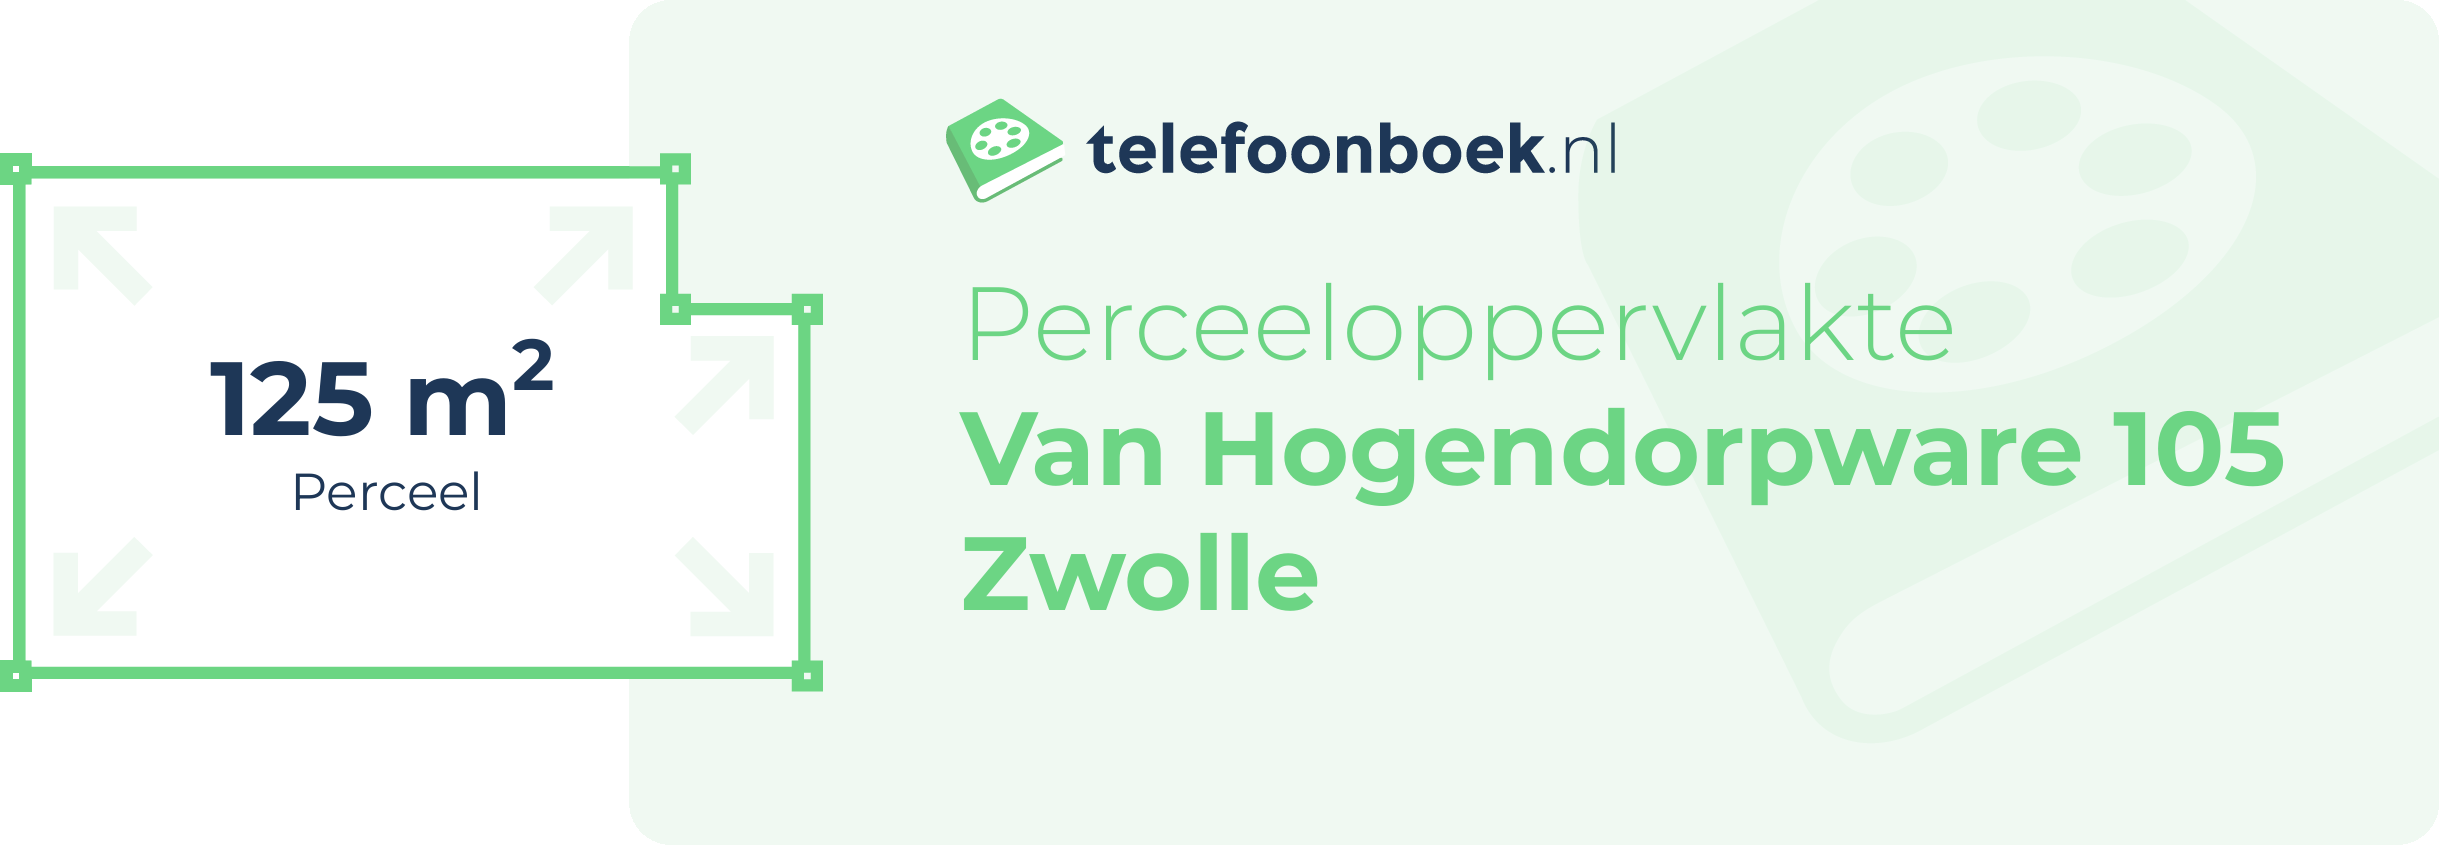 Perceeloppervlakte Van Hogendorpware 105 Zwolle